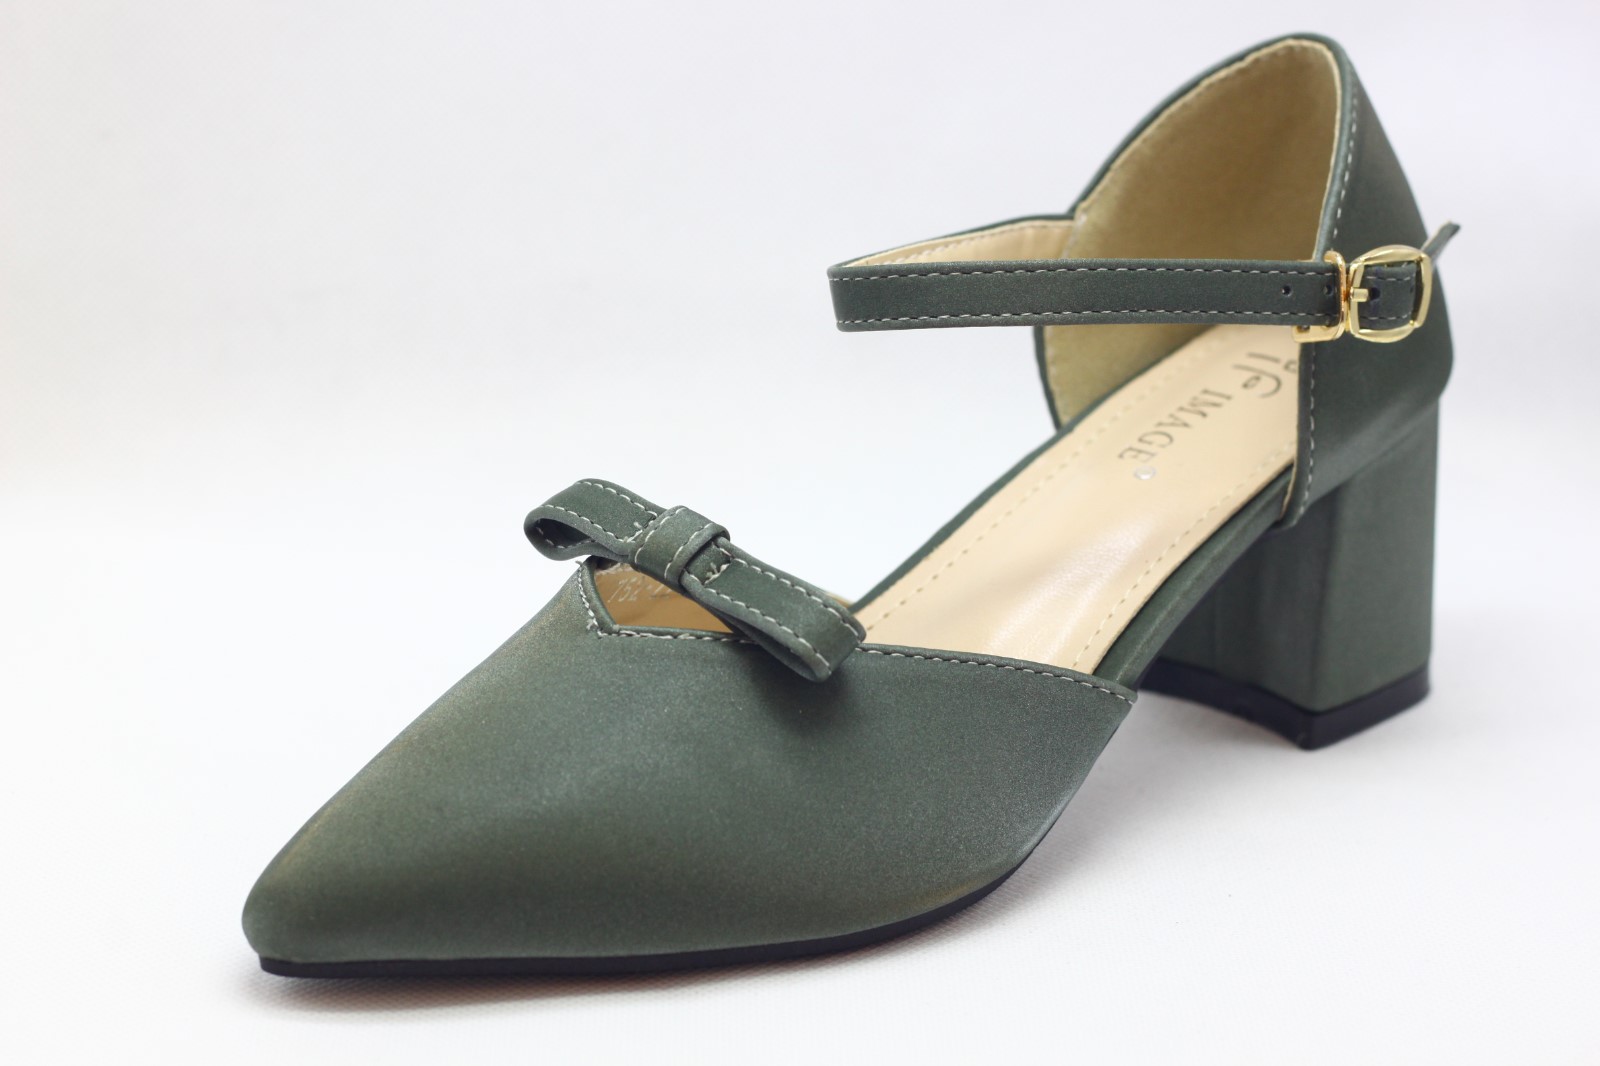 green 2 inch heels